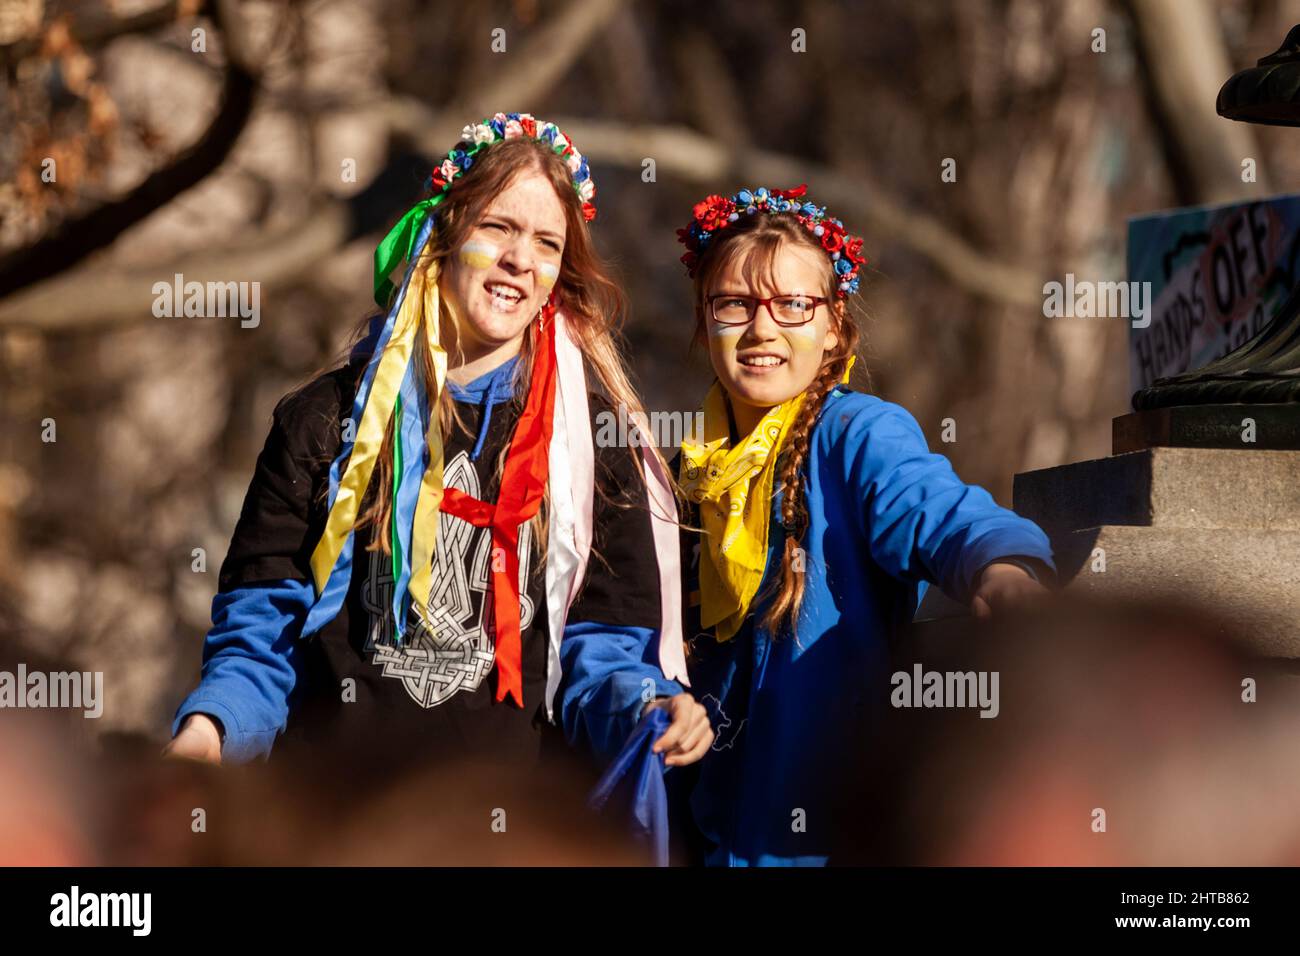 Washington, DC, USA, 27 Febbraio, 2021. Nella foto: I manifestanti indossano fiori e nastri nei loro capelli durante un raduno per l'Ucraina alla Casa Bianca. Migliaia di persone provenienti da tutti gli Stati Uniti si sono riunite per ringraziare gli Stati Uniti e altri paesi per il loro aiuto, e per chiedere una zona di non volo e altri aiuti per l’Ucraina. L'evento è stato sponsorizzato da United Help Ukraine e attivisti ucraini statunitensi, sia organizzazioni di assistenza che di advocacy statunitensi. Credit: Allison Bailey / Alamy Live News Foto Stock